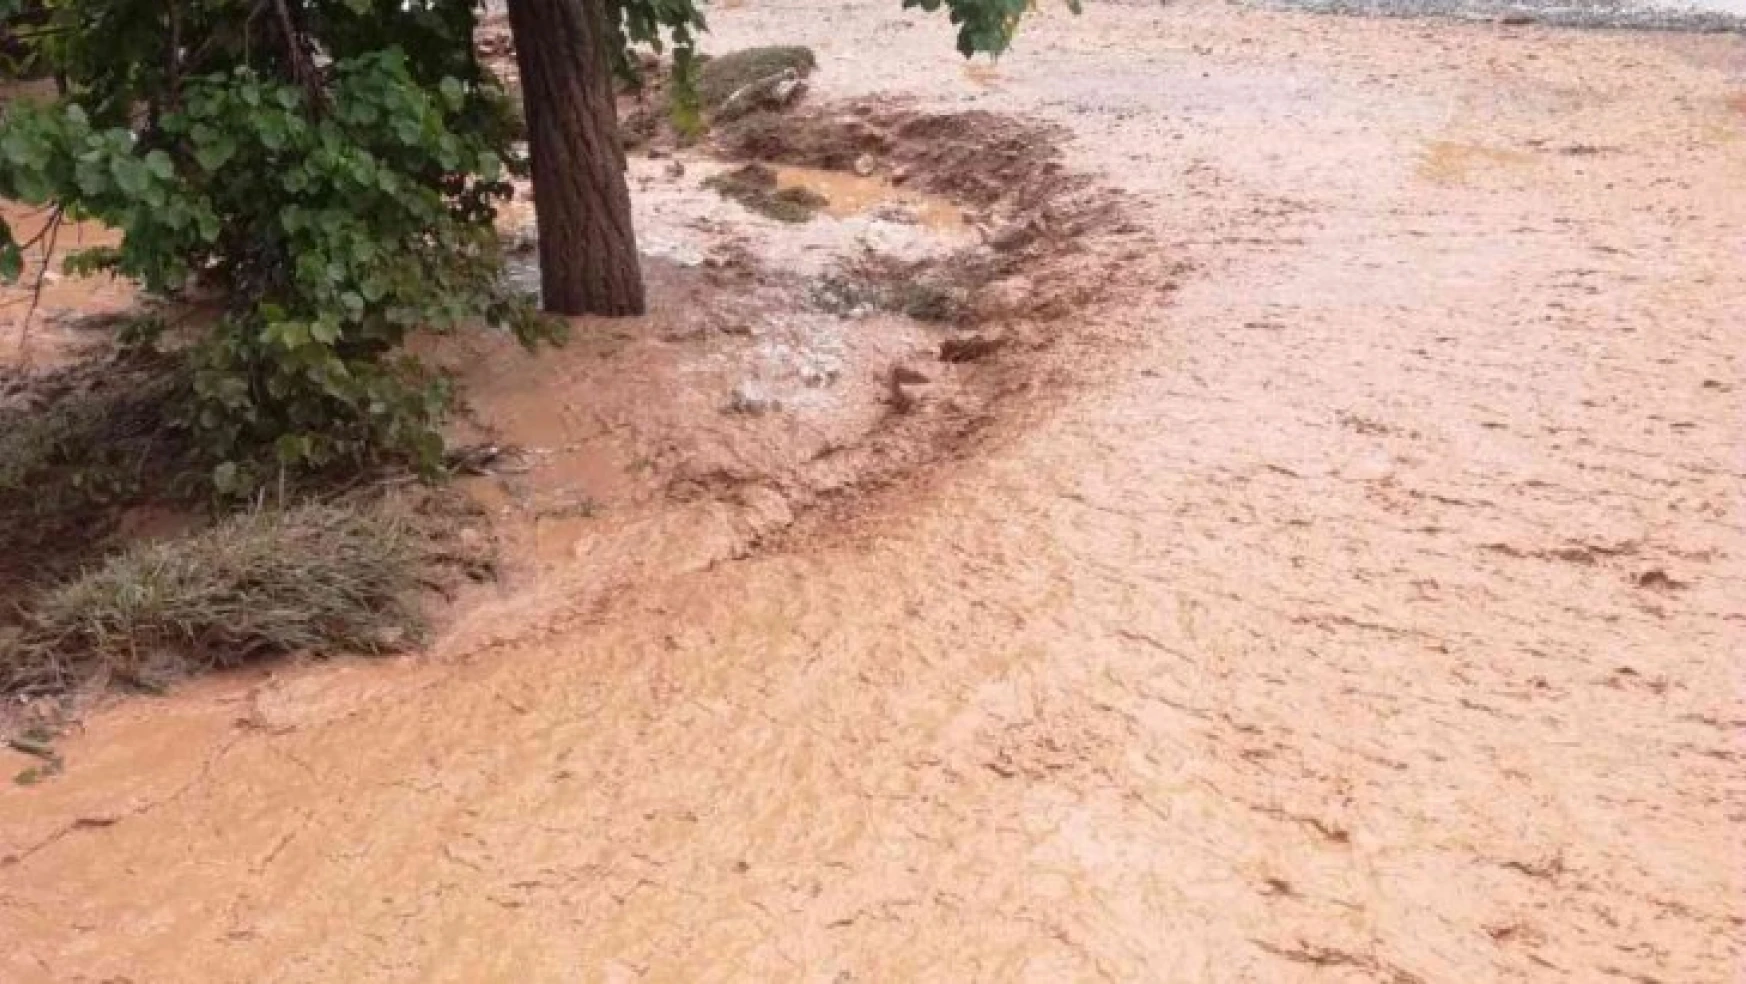 Malatya'da sağanak yağış sele neden oldu